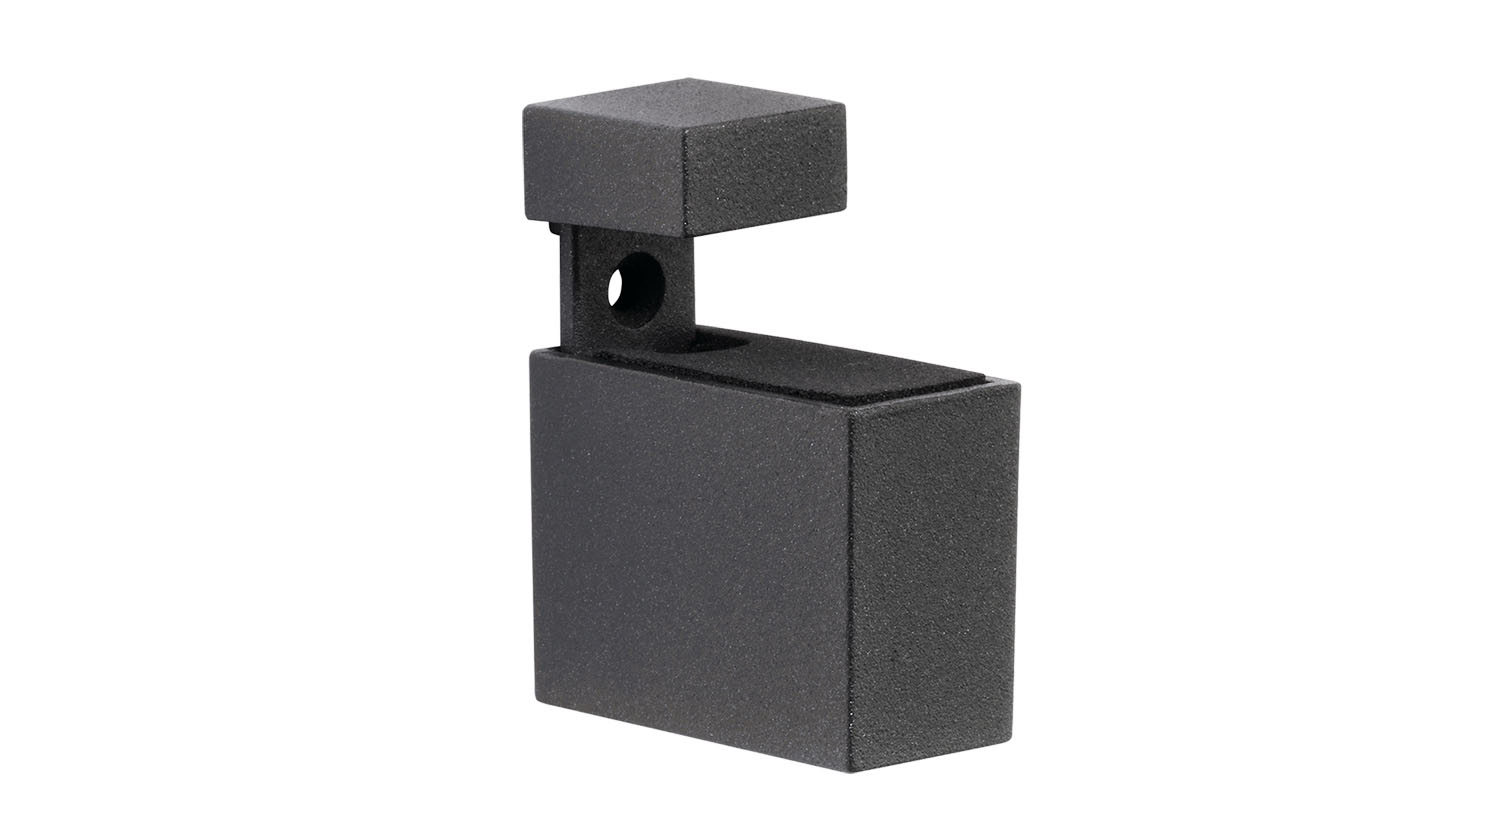 1 Pcs Adjustable Metal Shelf Holder Bracket Support For Glass or Wood Shelves K0 